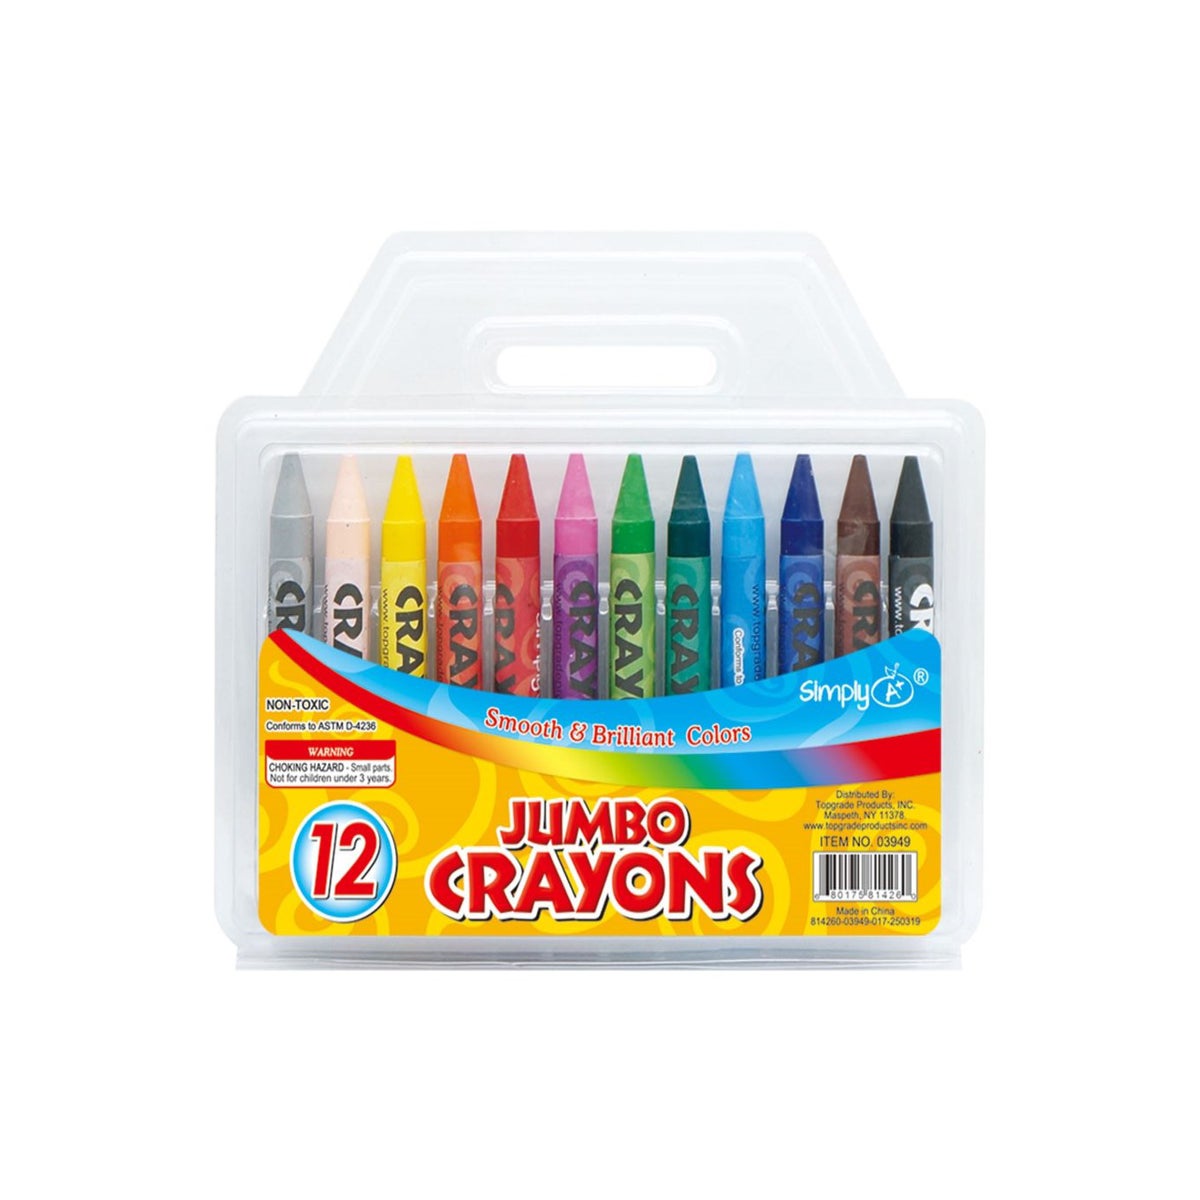 CRAYON: 12 PK, JUMBO #03949 (PK 24/144) - pen, marker, crayon & paints  (jade)